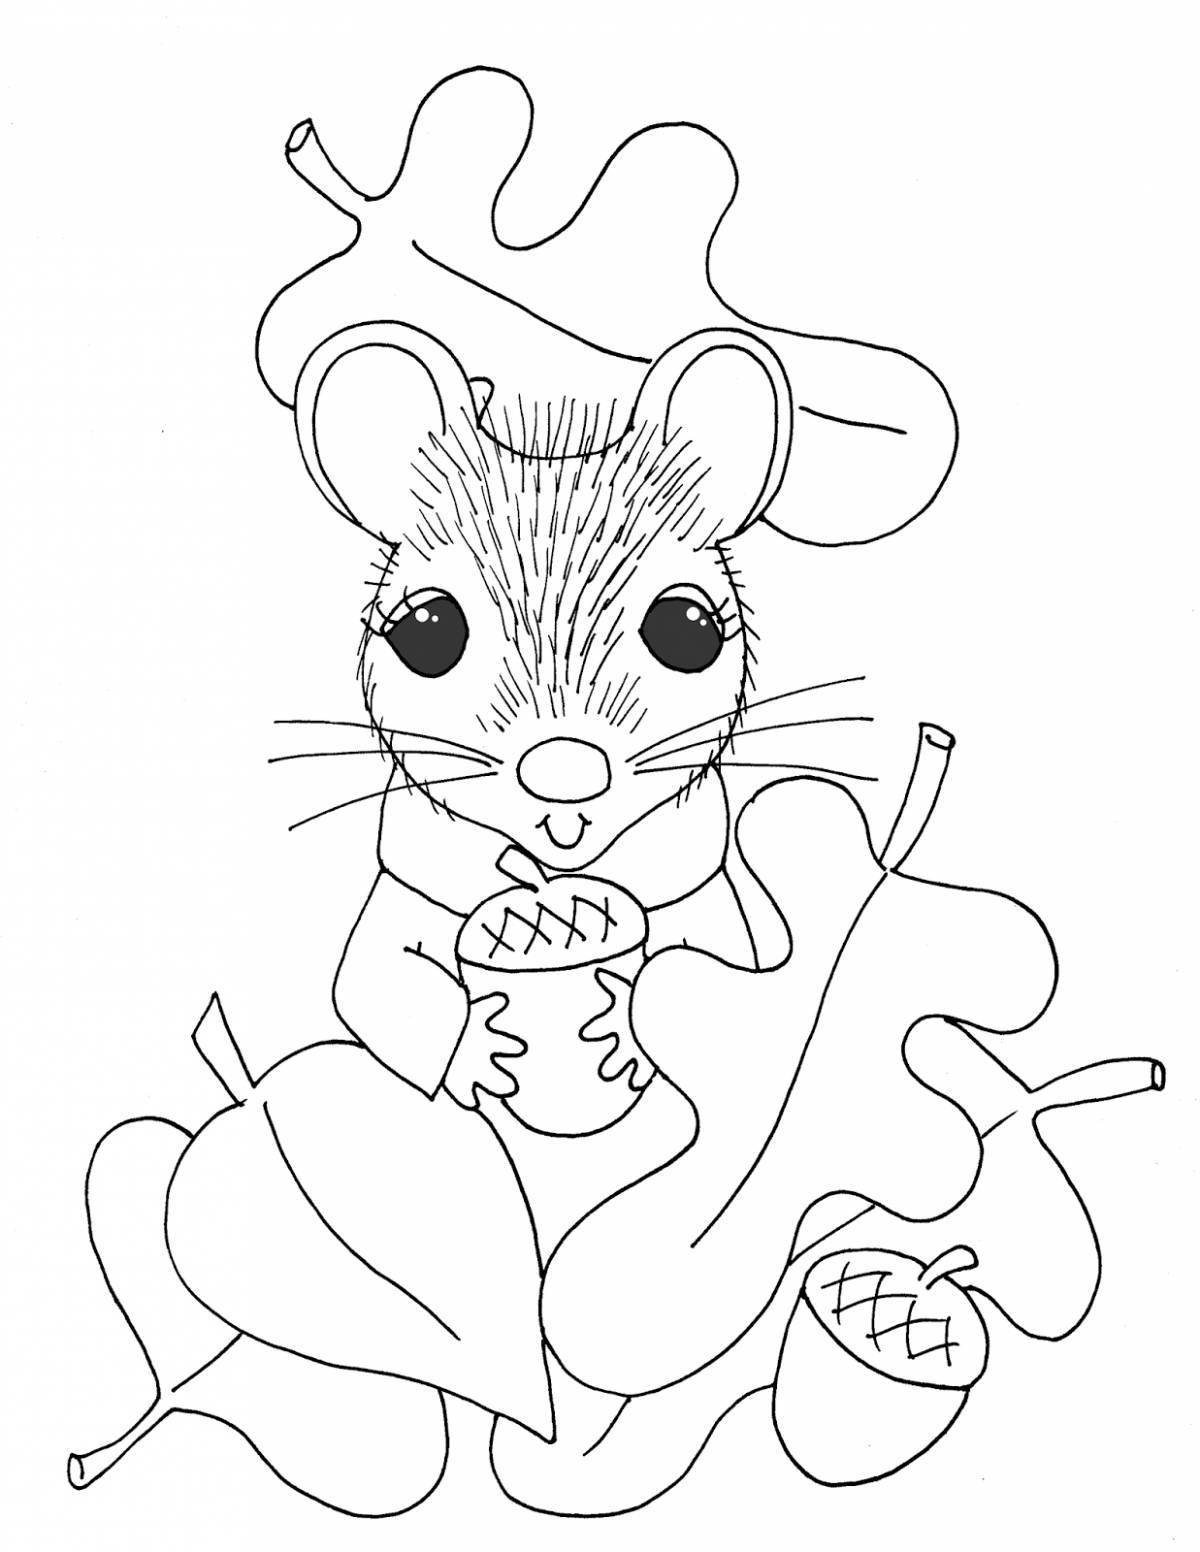 Brilliant mouse norushka coloring book